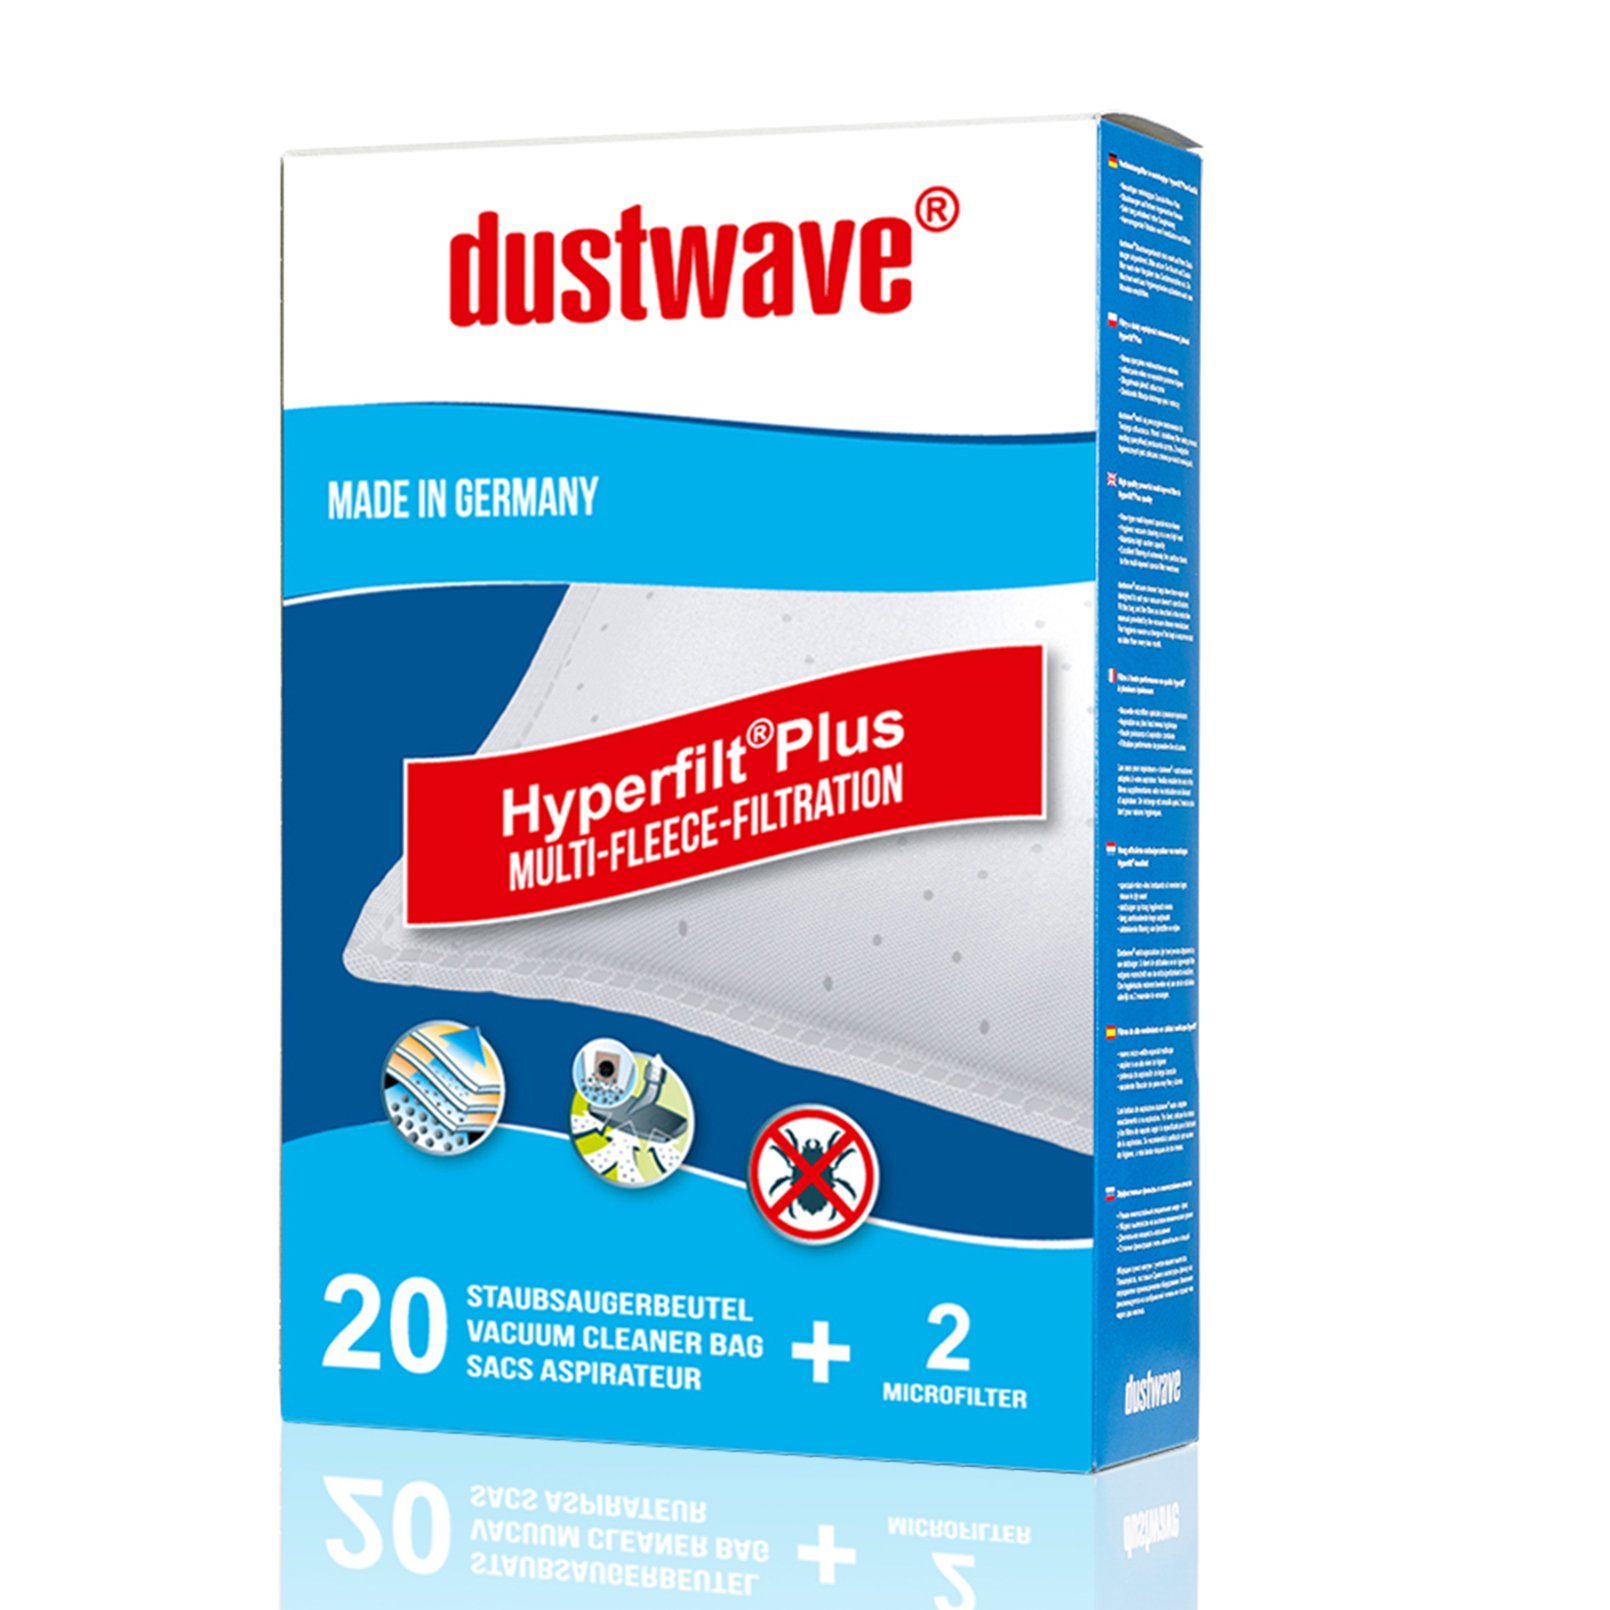 Dustwave Staubsaugerbeutel Megapack, passend für Base BA 2702, 20 St., Megapack, 20 Staubsaugerbeutel + 2 Hepa-Filter (ca. 15x15cm - zuschneidbar)